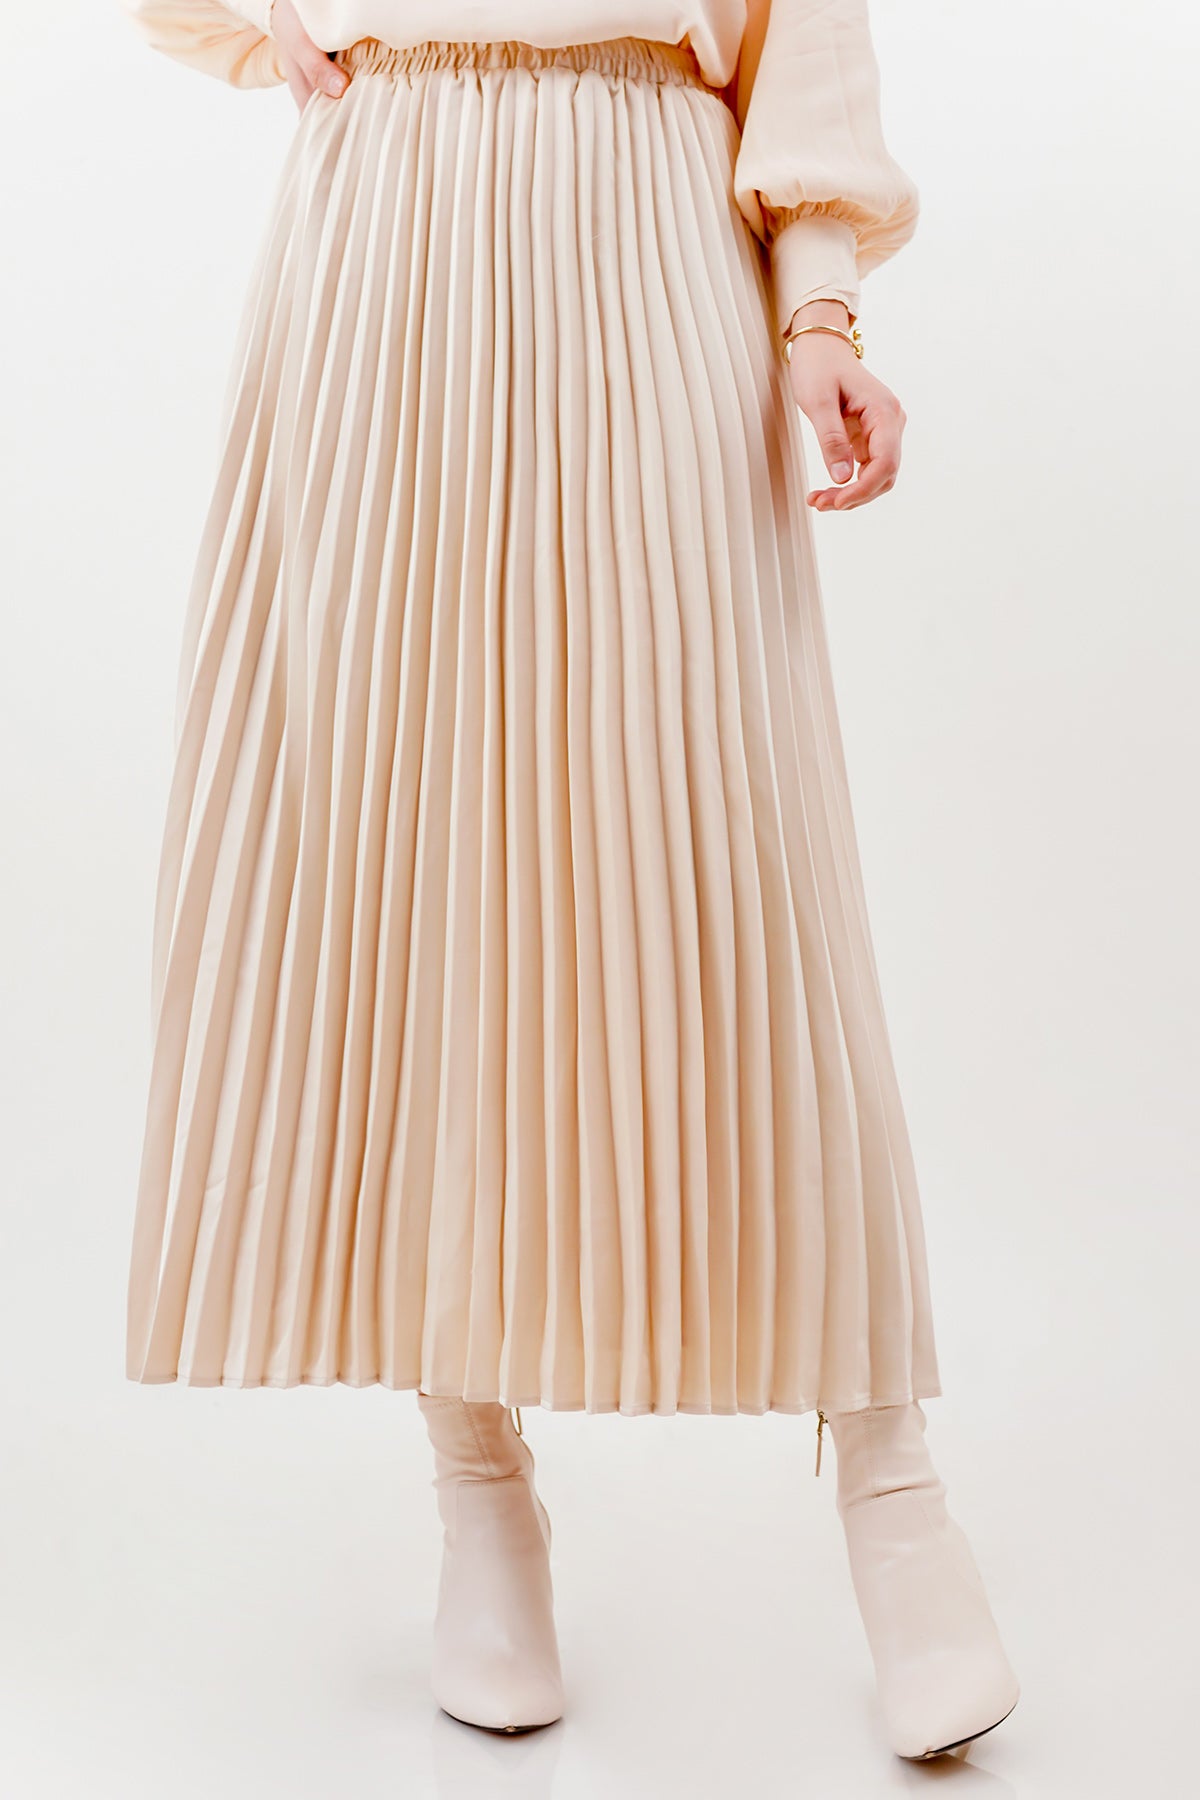 Satin Pleats Skirt - Cream